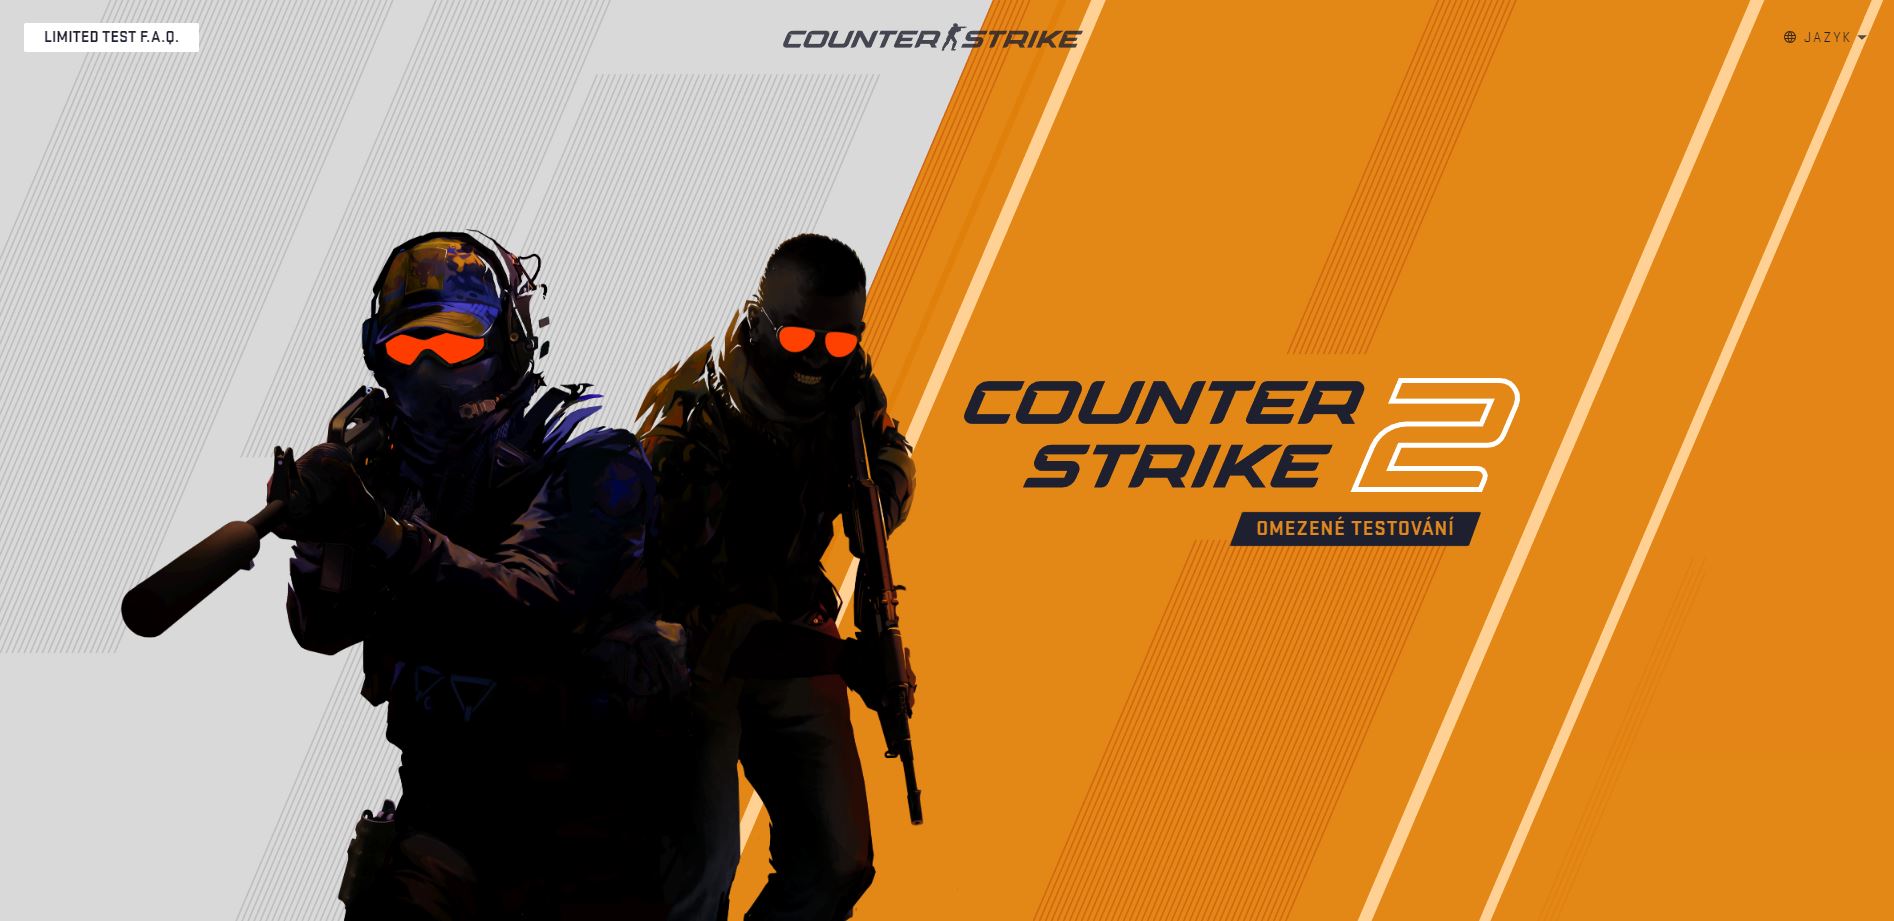 Testování Counter-Strike 2 začíná! Jak chce Valve se hrou naložit? A co se změní?